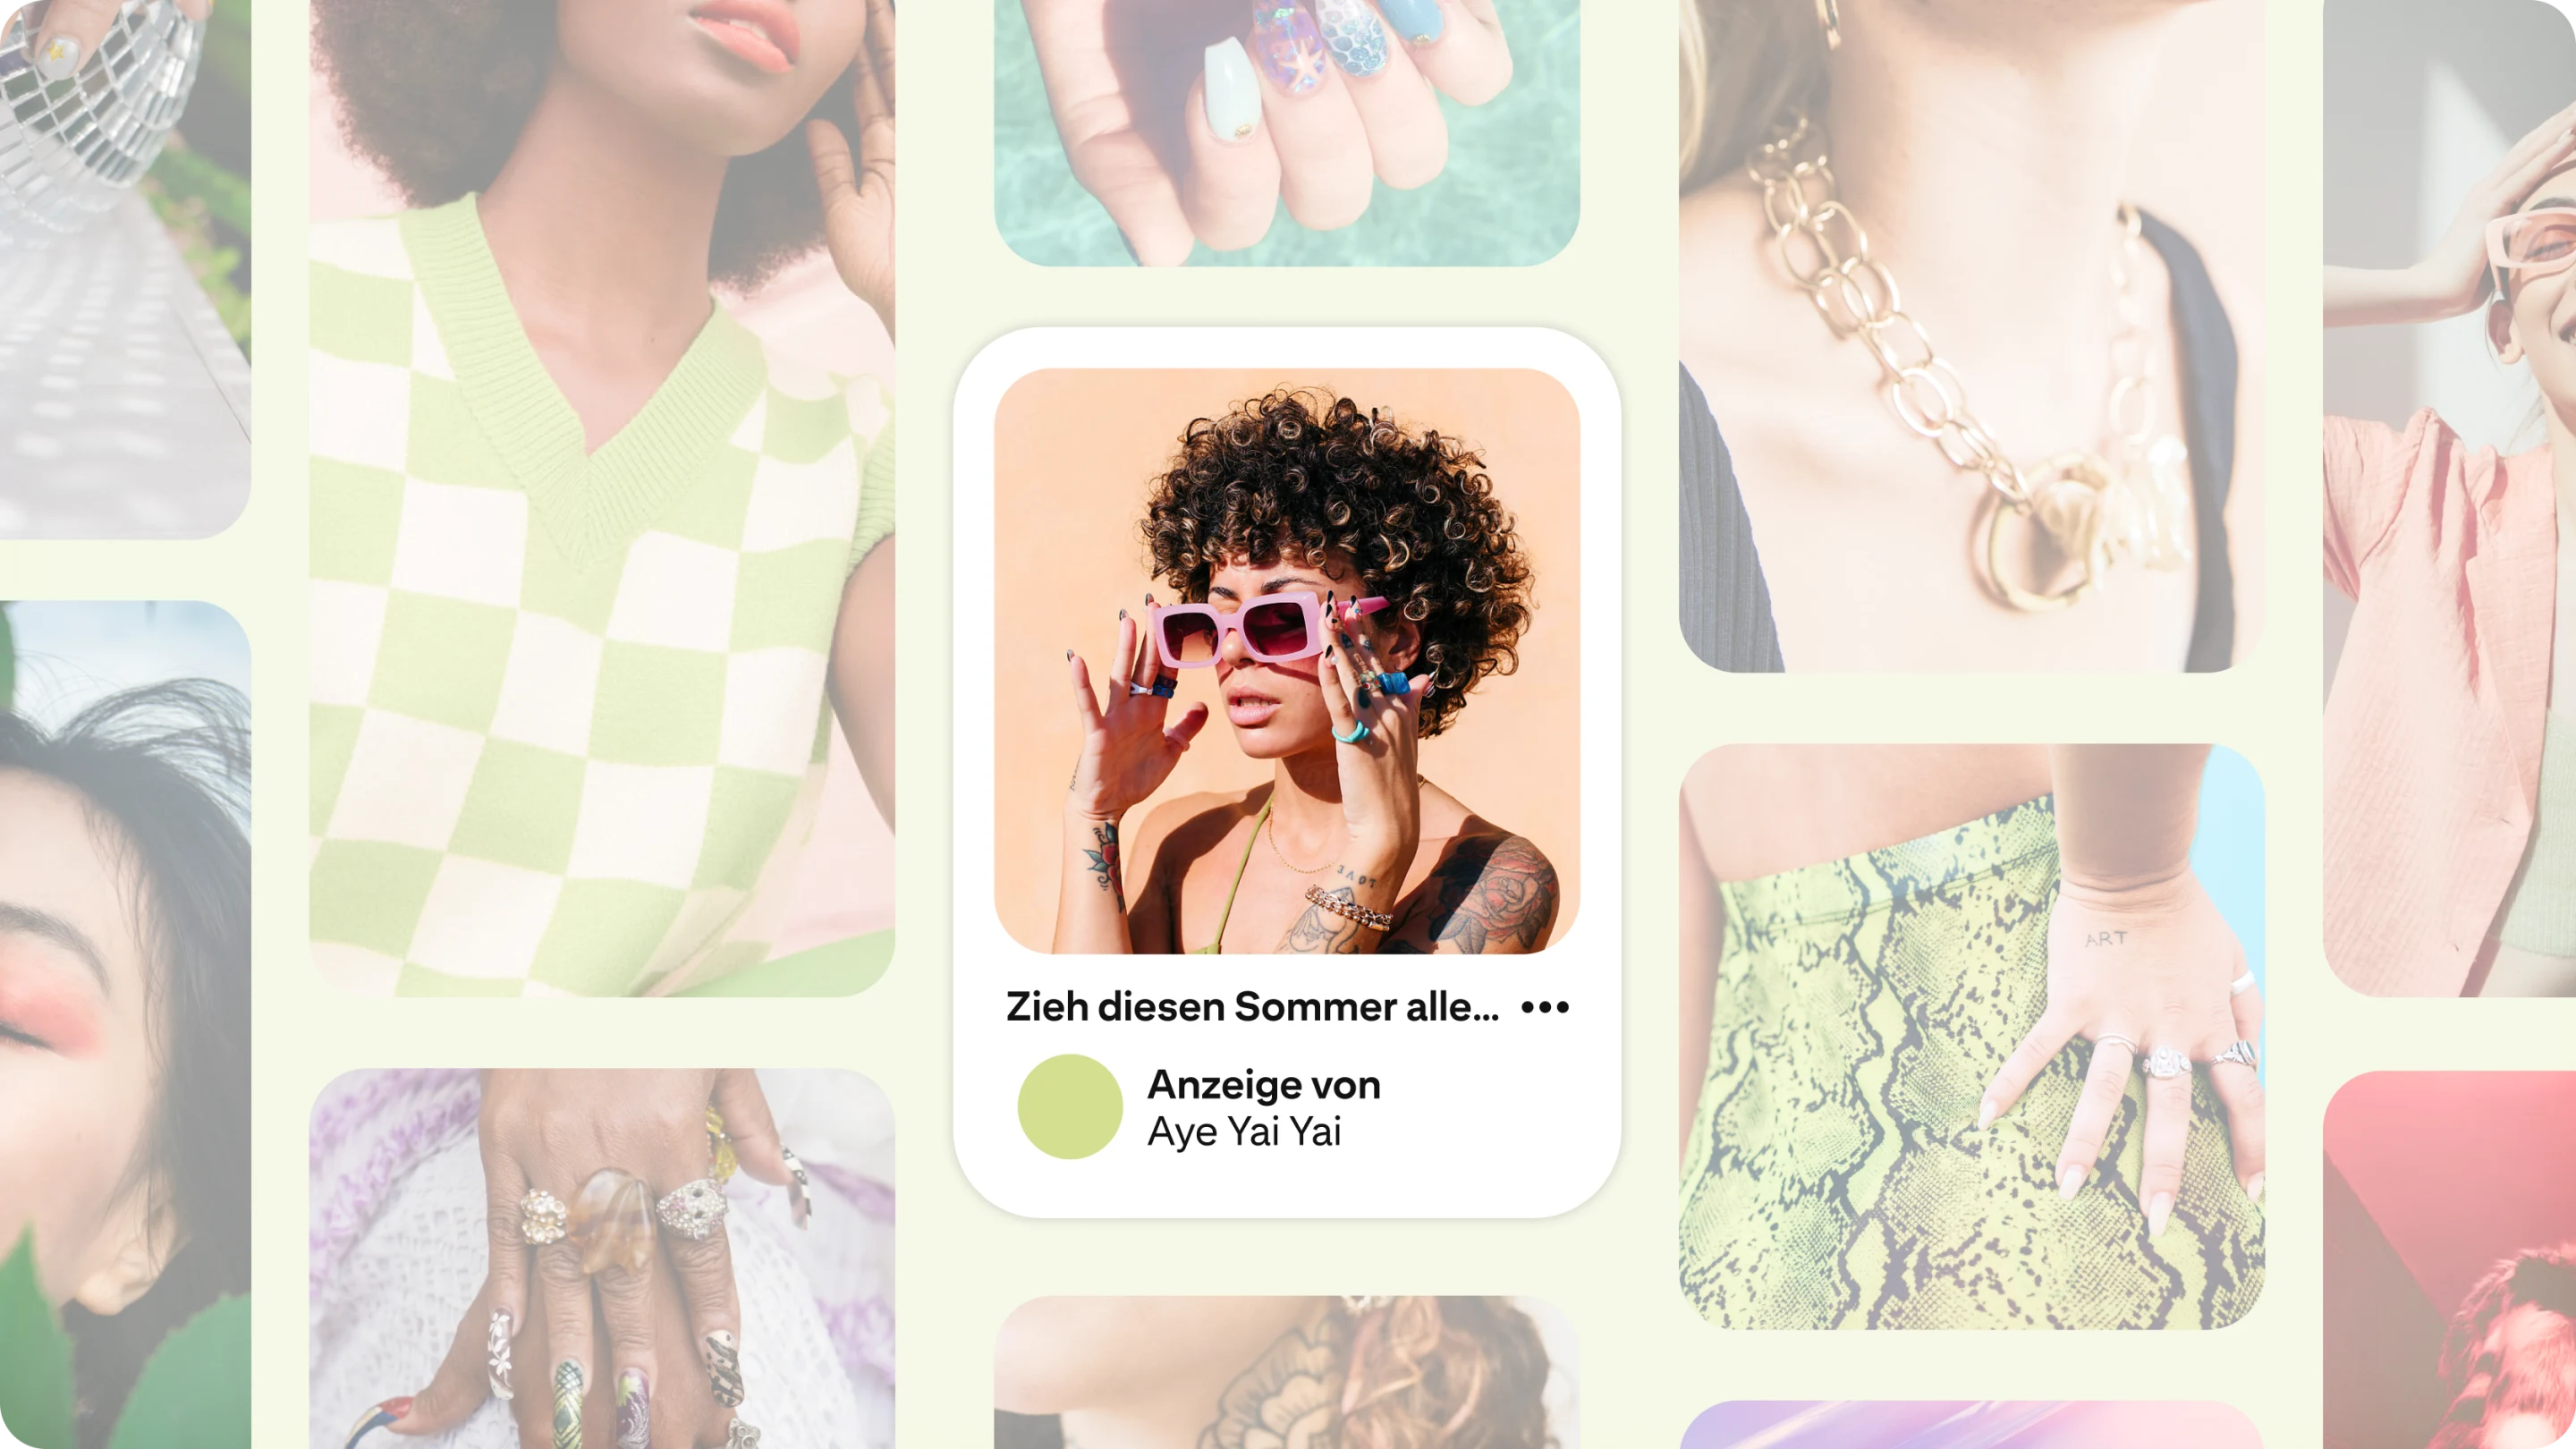 Innerhalb der Darstellung mehrerer Pins zum Thema Mode ist auf einer Anzeige eine Frau der Gen Z zu sehen, die eine pinke Sonnenbrille trägt.